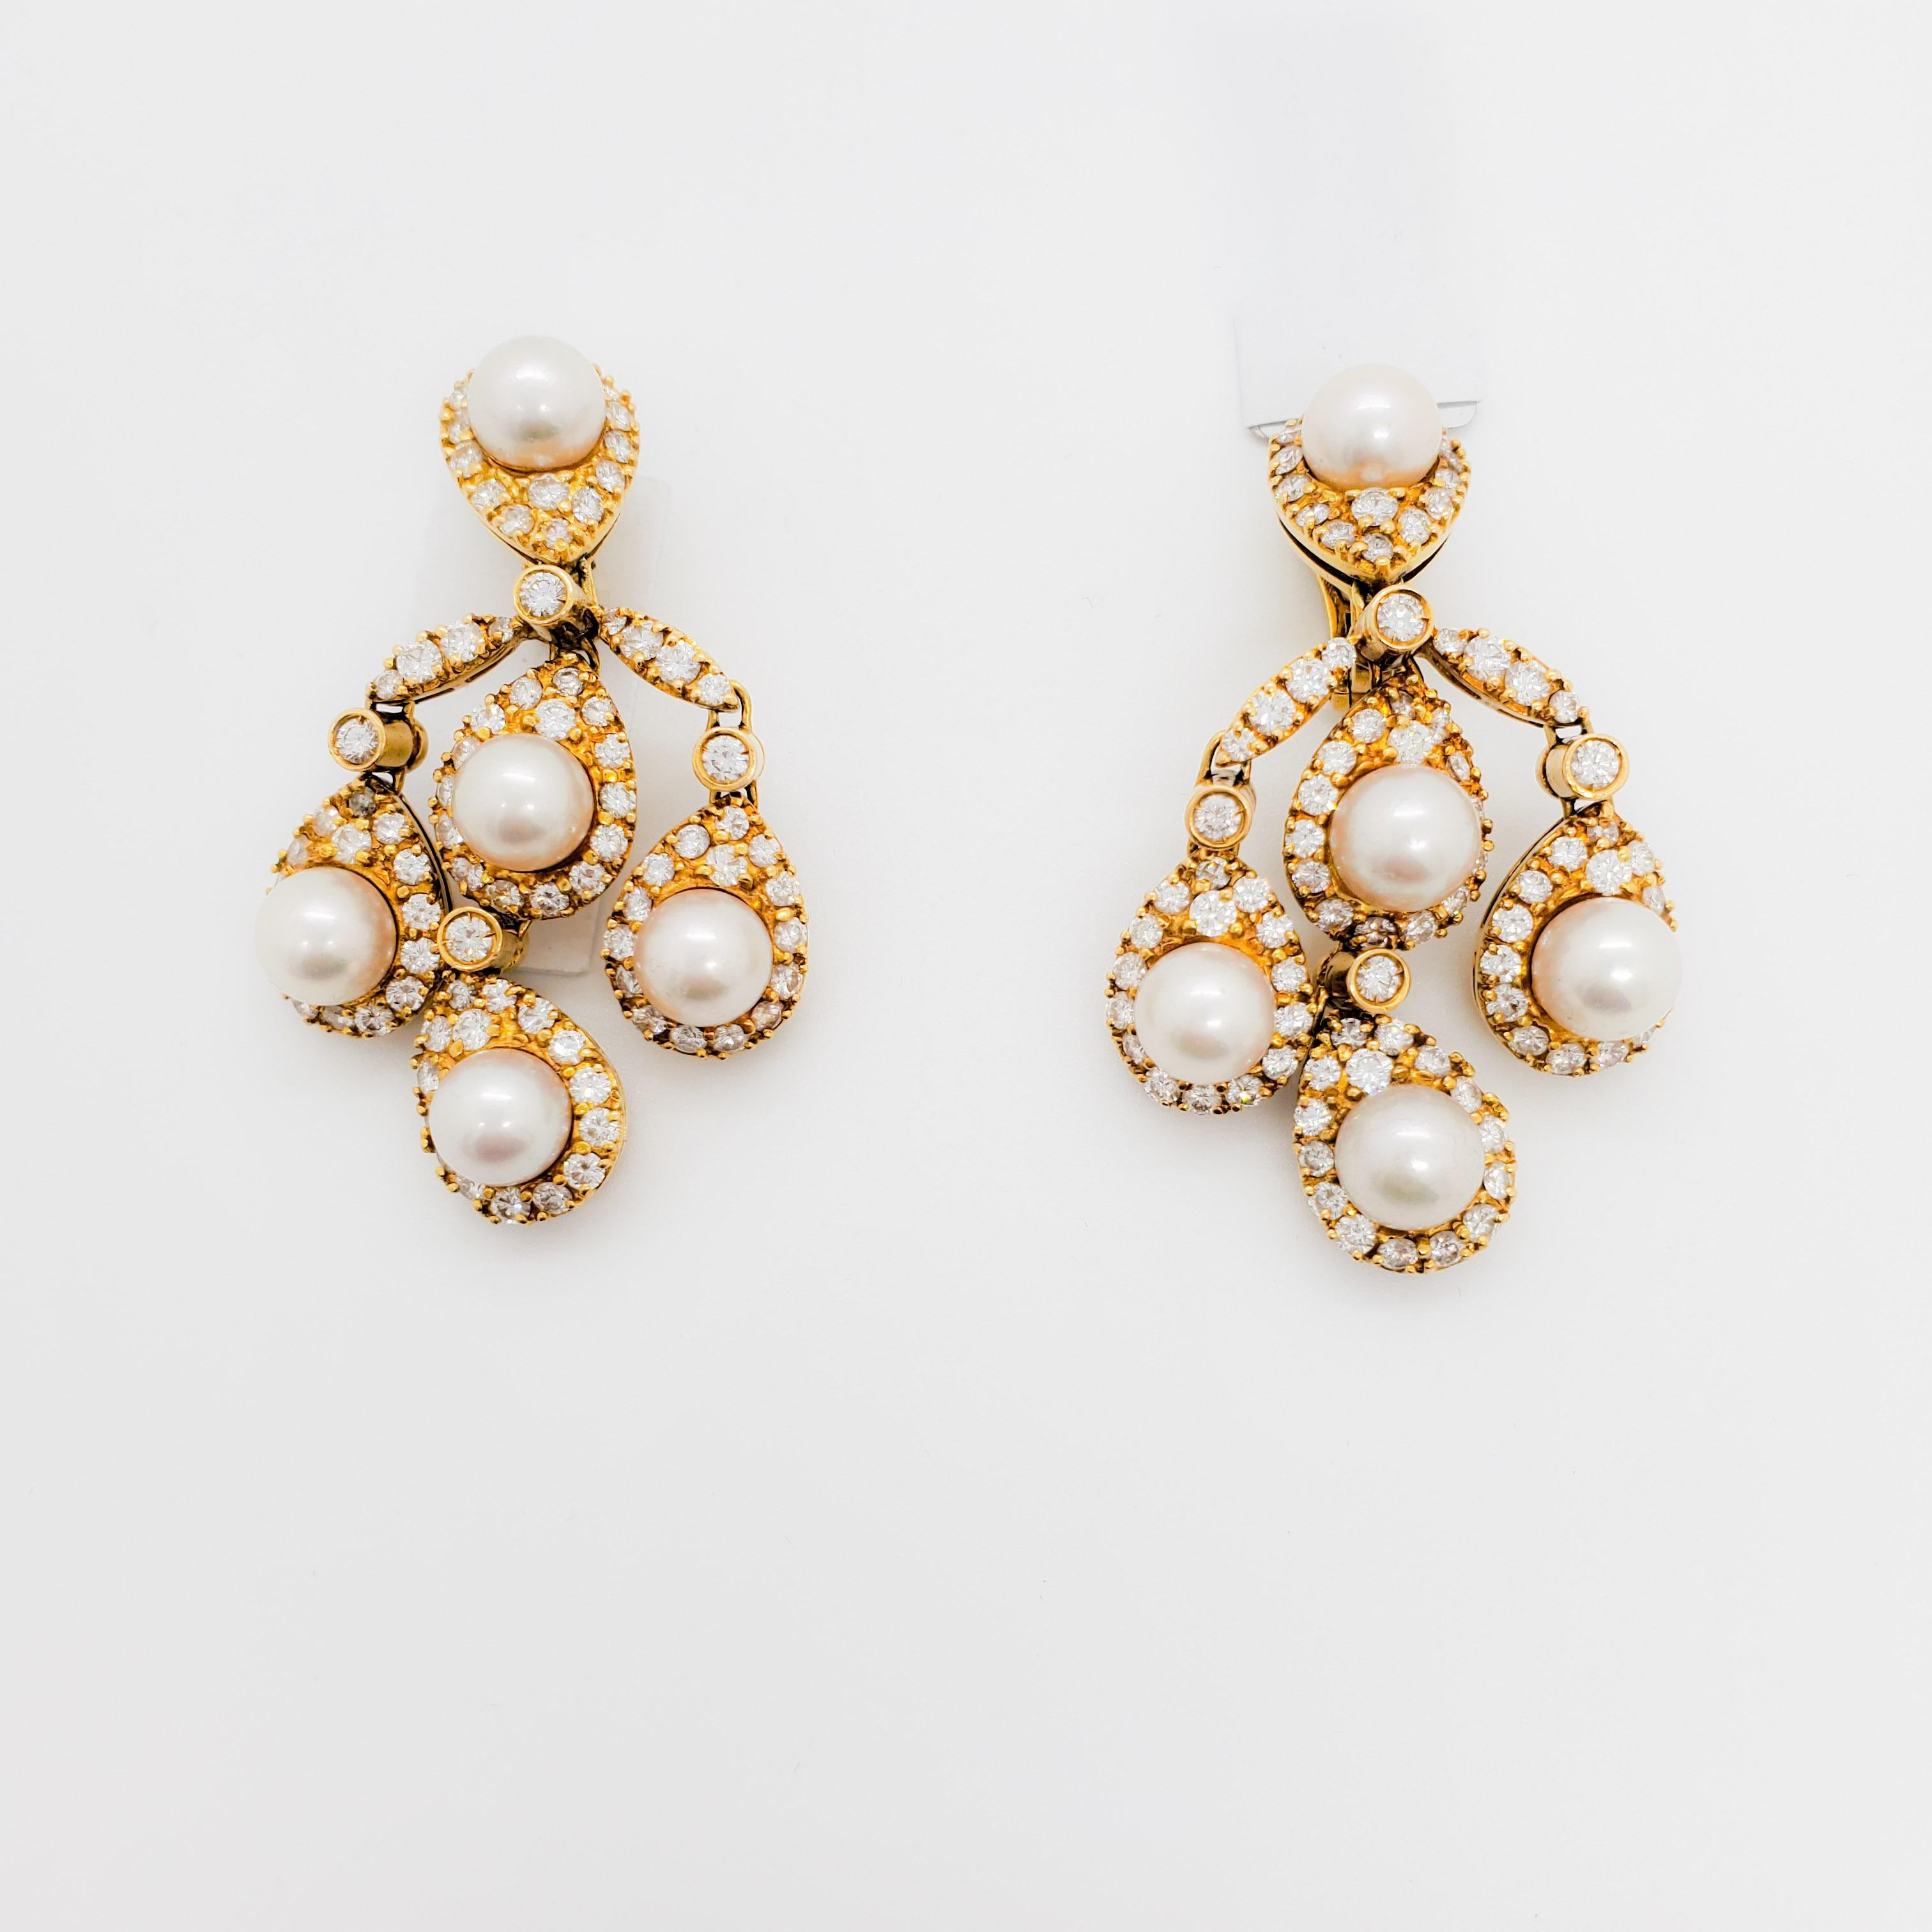 Wunderschöne weiße Akoya-Perlen Größe 8-8,5 mm mit 8,70 ct. weißen runden Diamanten.  Handgefertigt in 18k Gelbgold.  Diese sind mit einem Clip versehen, aber es kann ein Pfosten hinzugefügt werden.